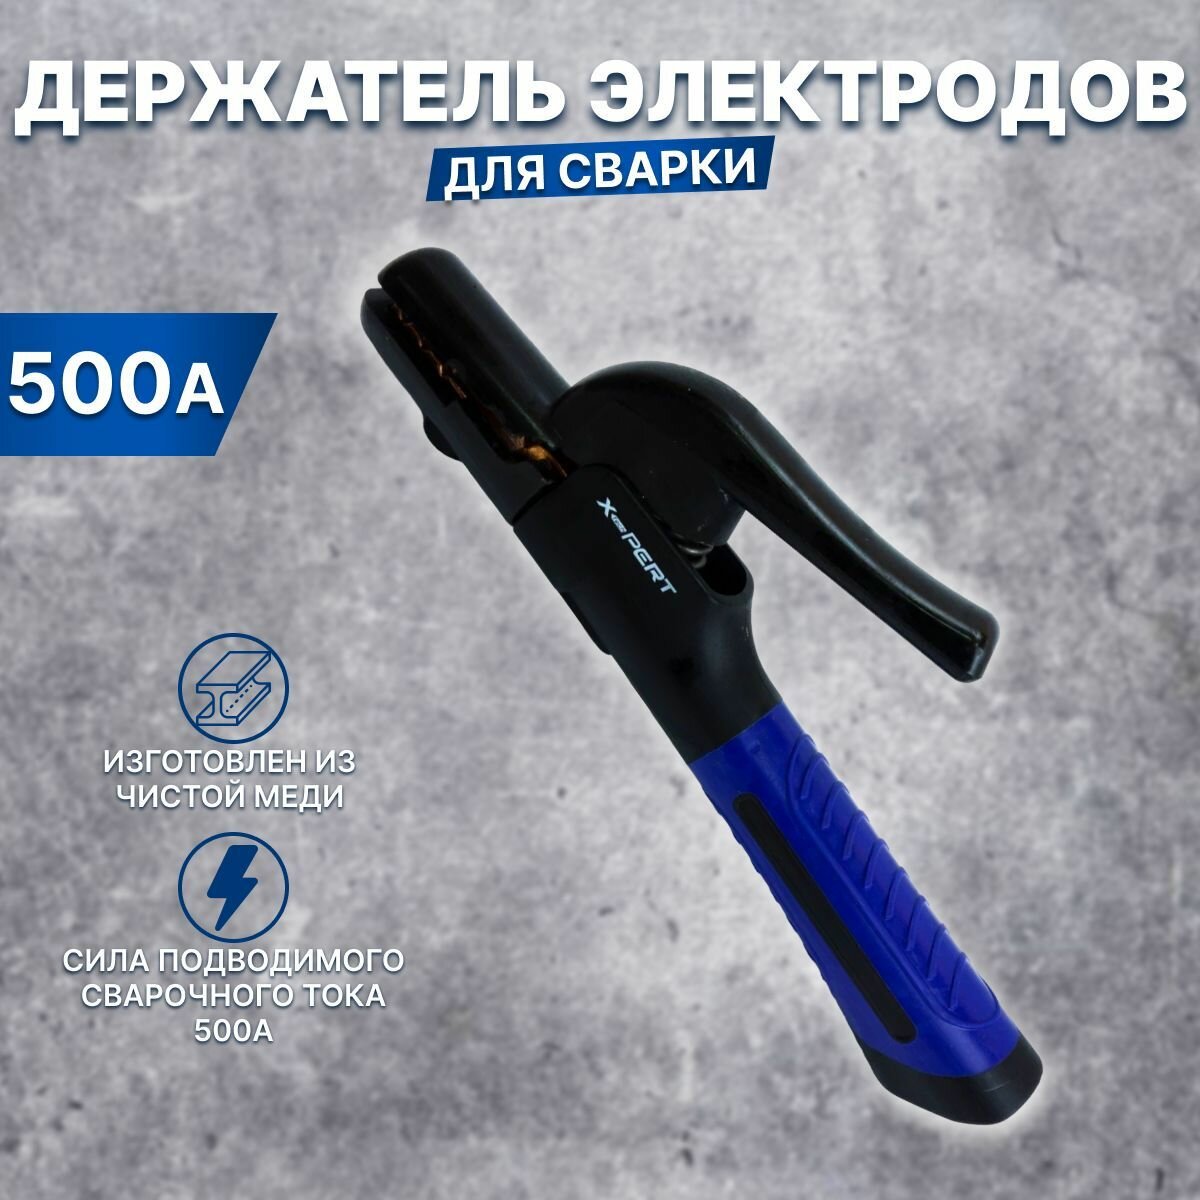 Держатель электродов X-PERT-PROFI А500 / подарок мужчине